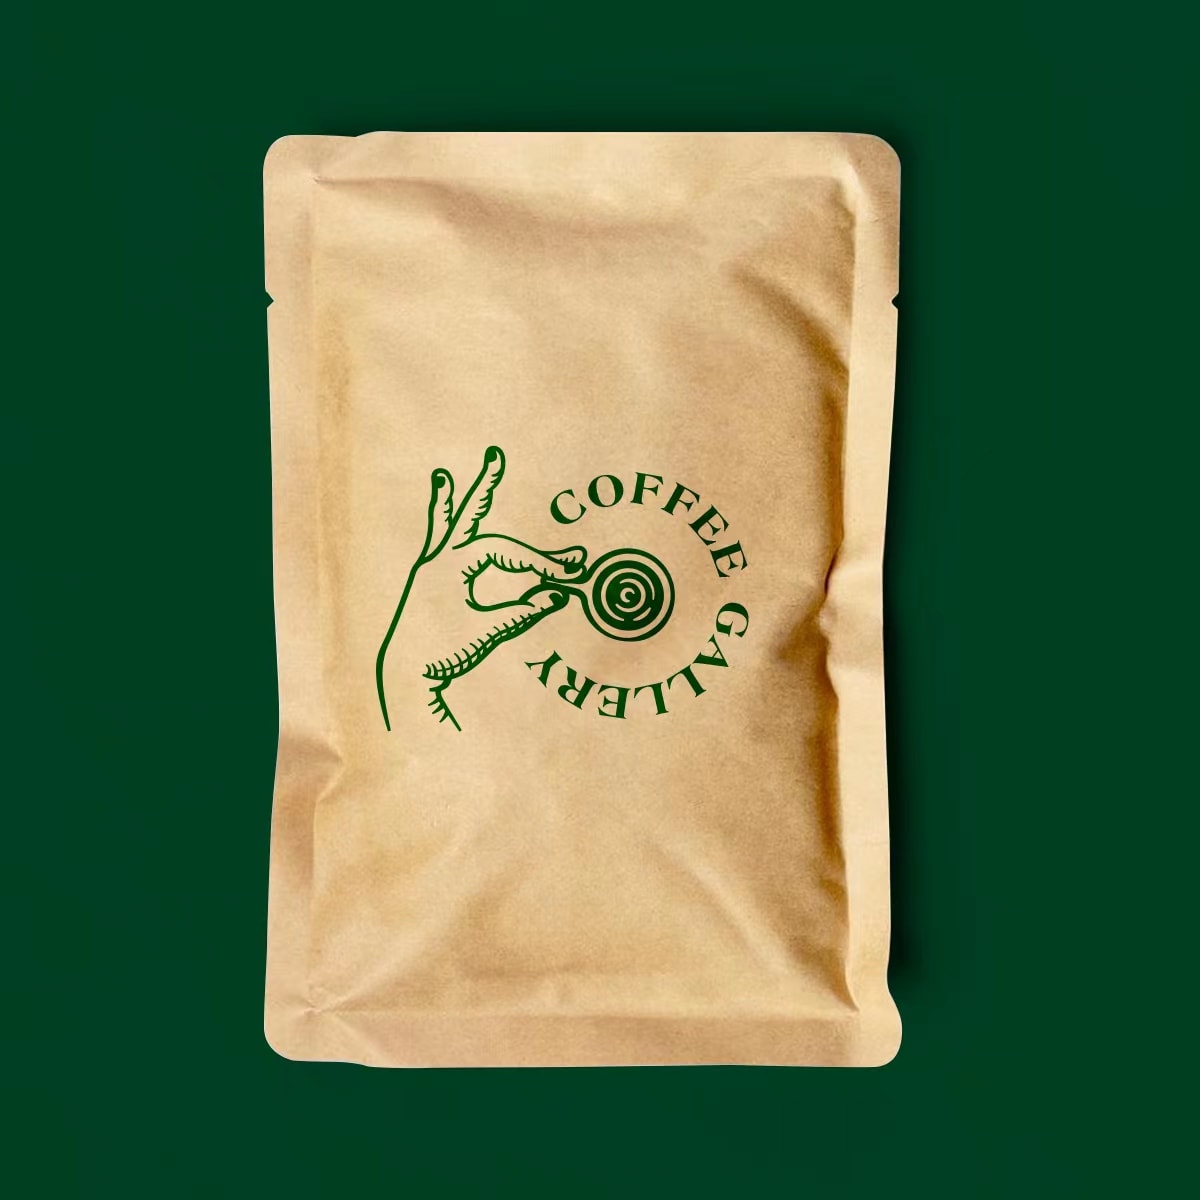 コーヒー豆のブランドロゴデザイン